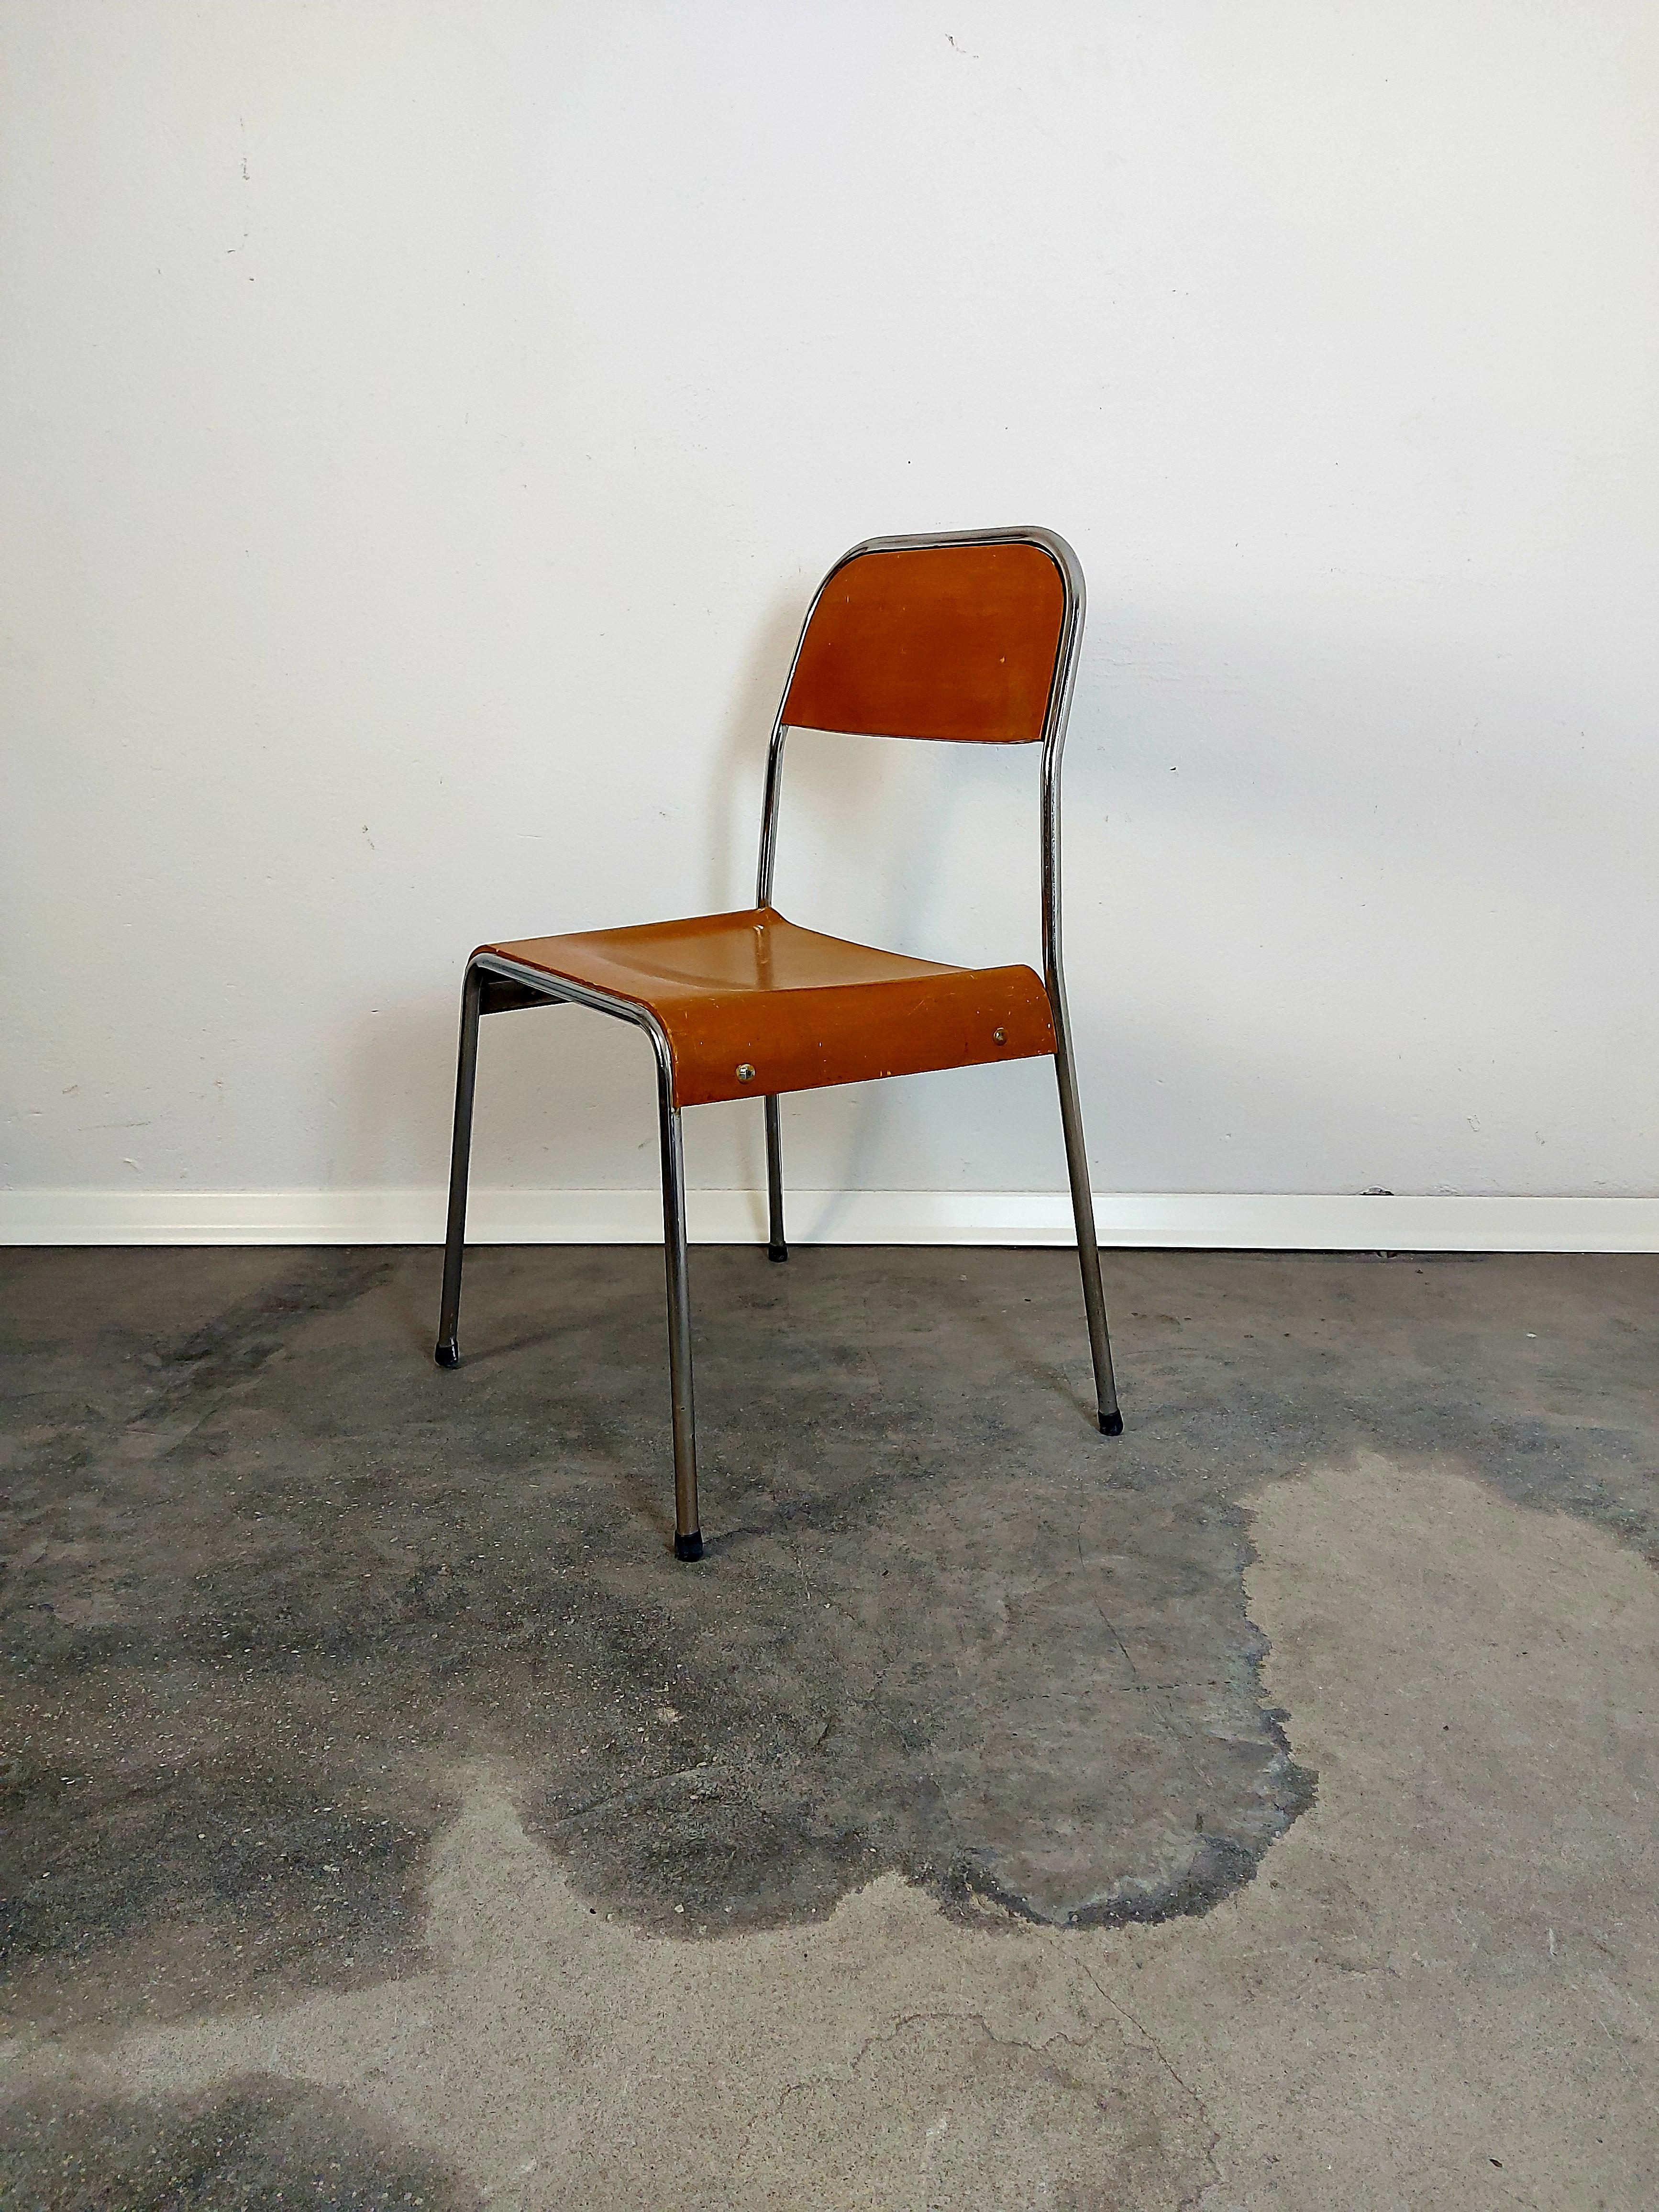 Stapelbare Stühle
Hersteller: Stol Kamnik
Land des Herstellers: Slowenien
Zeitraum: 1970s
MATERIALIEN: Chrom, Sperrholz
Zustand: guter Vintage-Zustand.